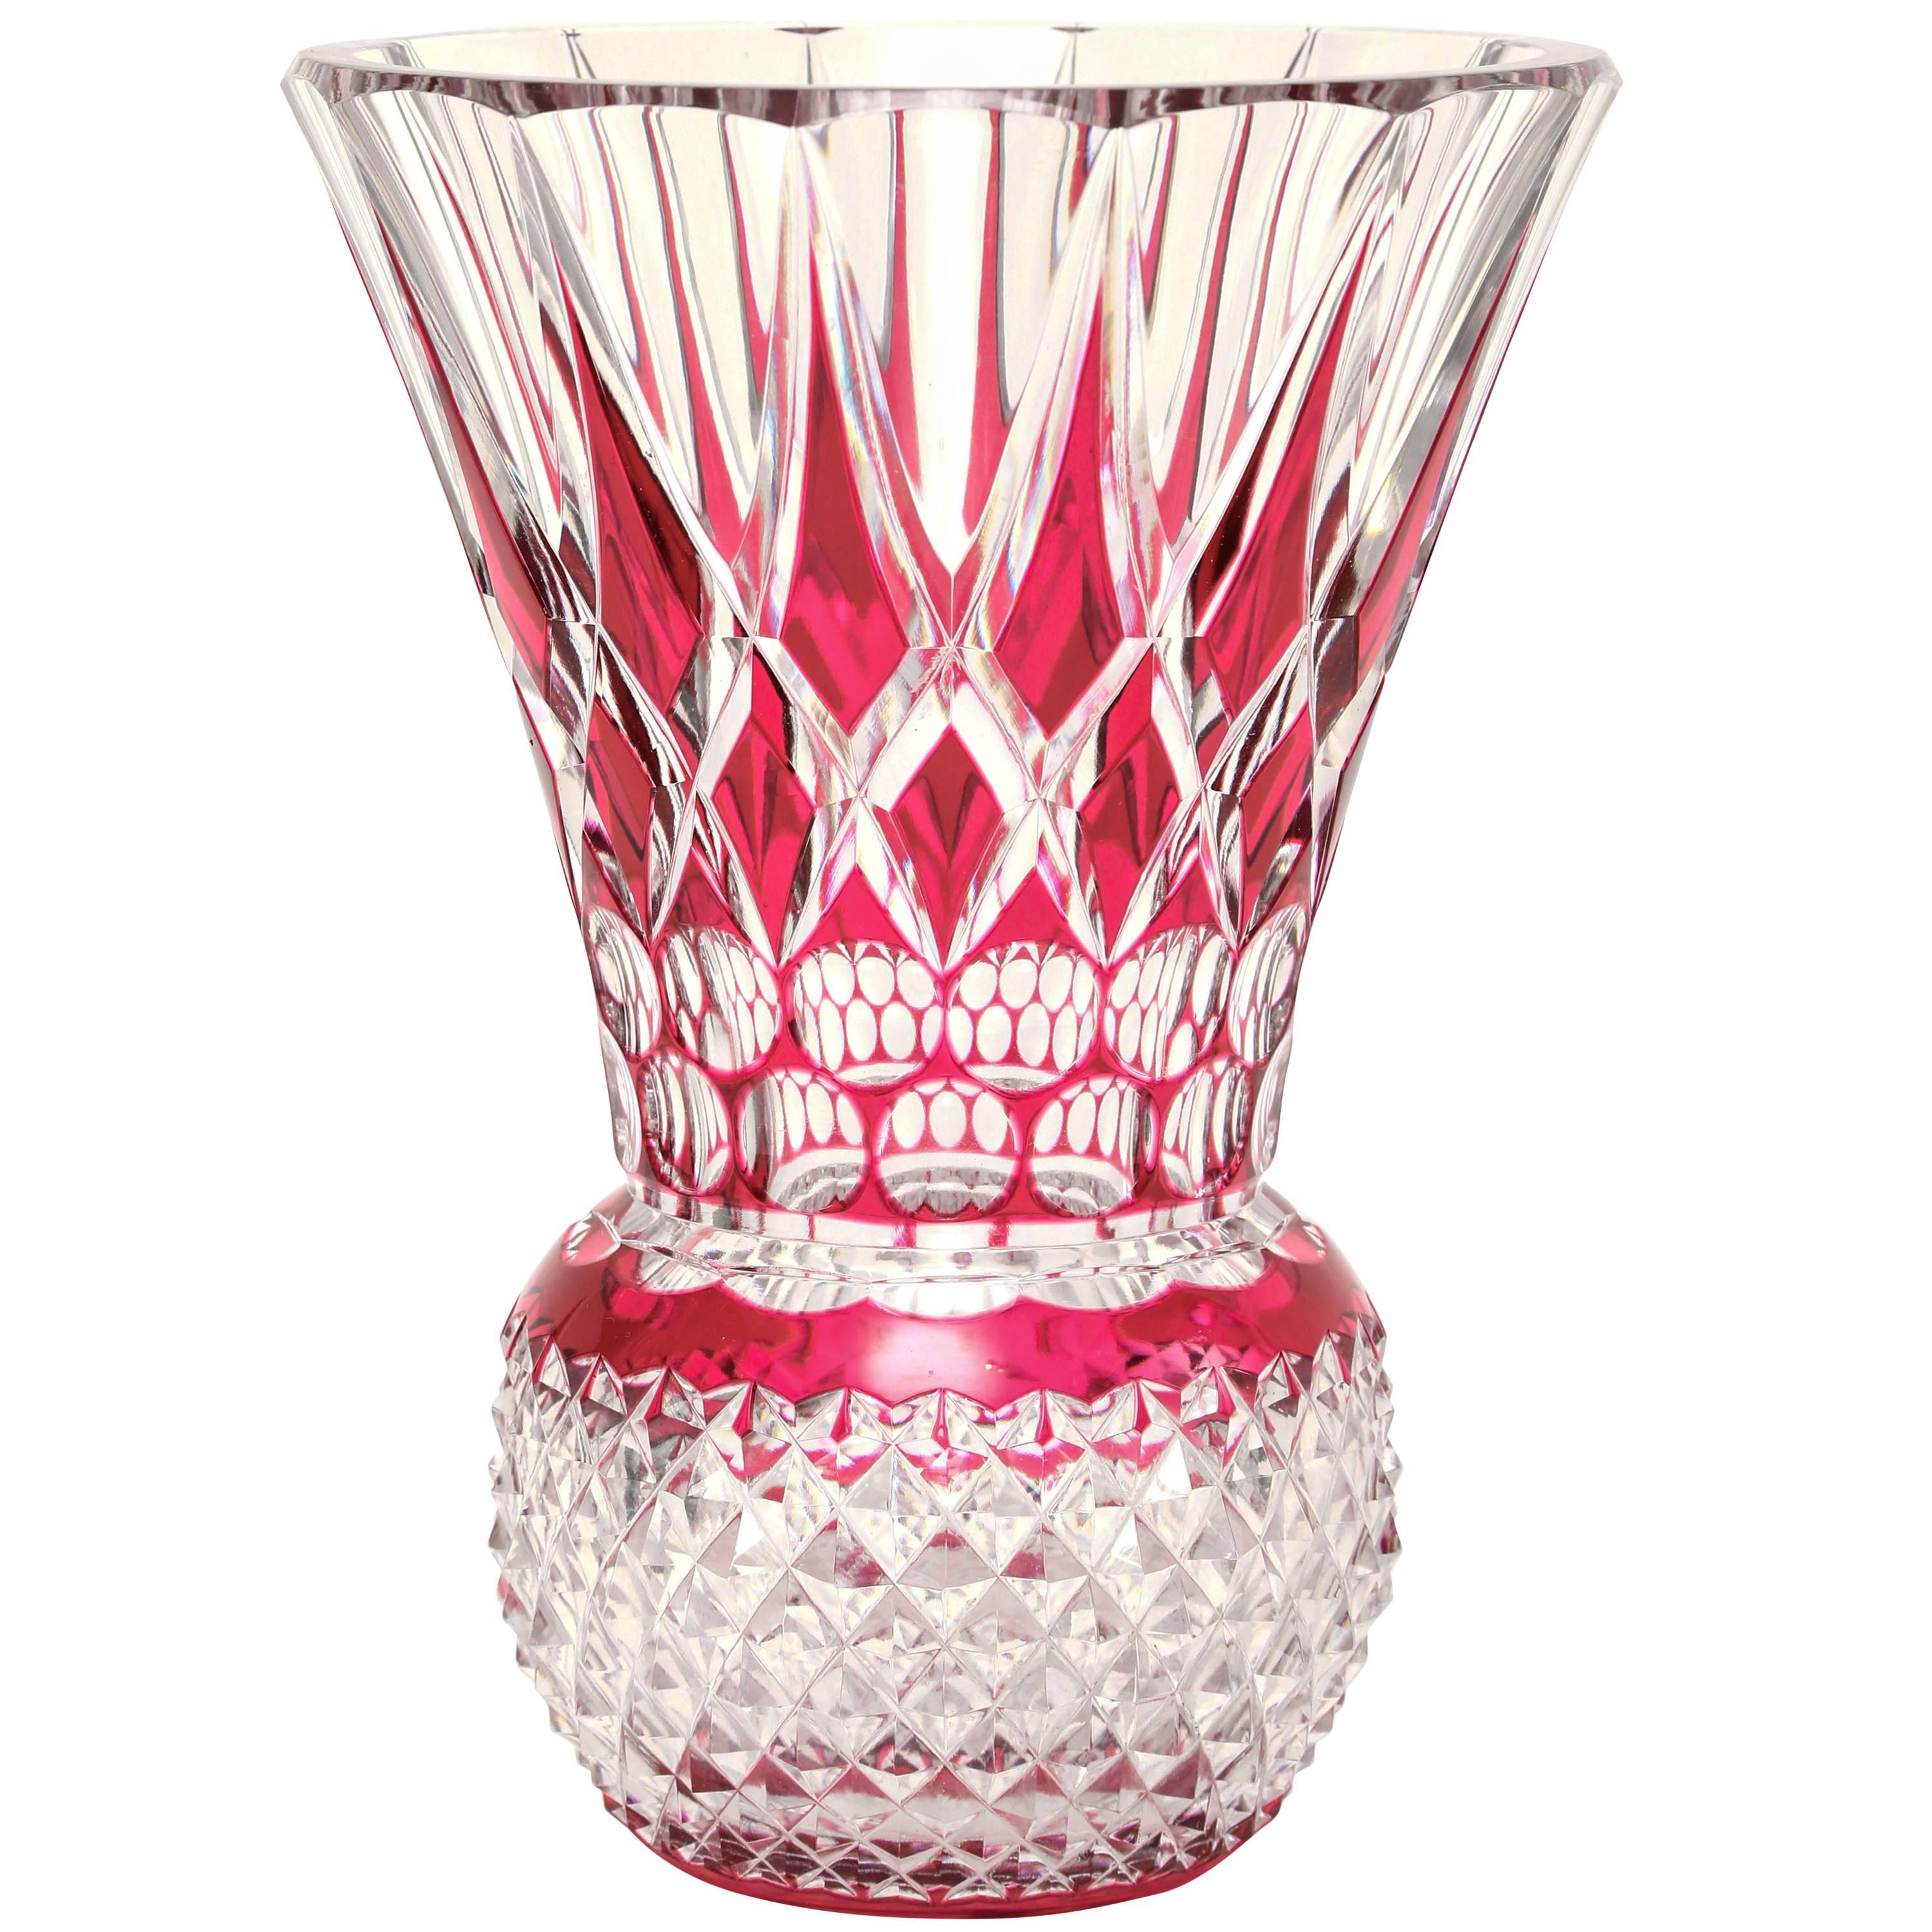 Impressionnant grand vase lourd taillé, Antique Val Saint Lambert. Couleur rubis magnifique